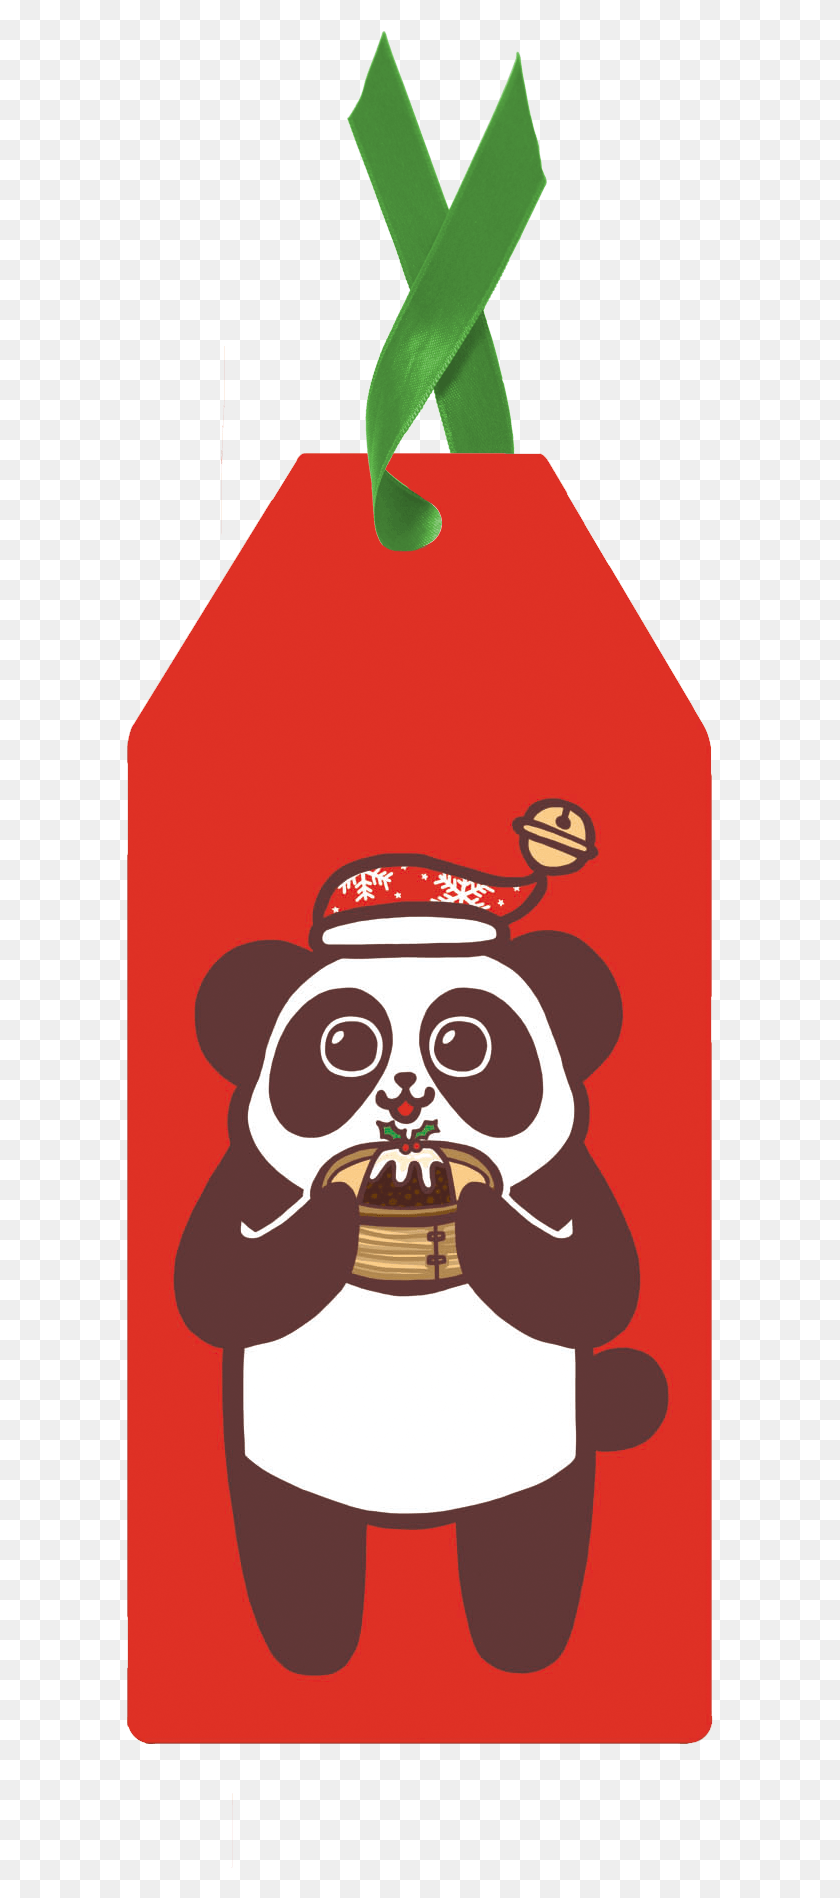 587x1838 Descargar Png / Panda Rojo Etiqueta De Regalo De Dibujos Animados, Anuncio, Cartel, Etiqueta Hd Png